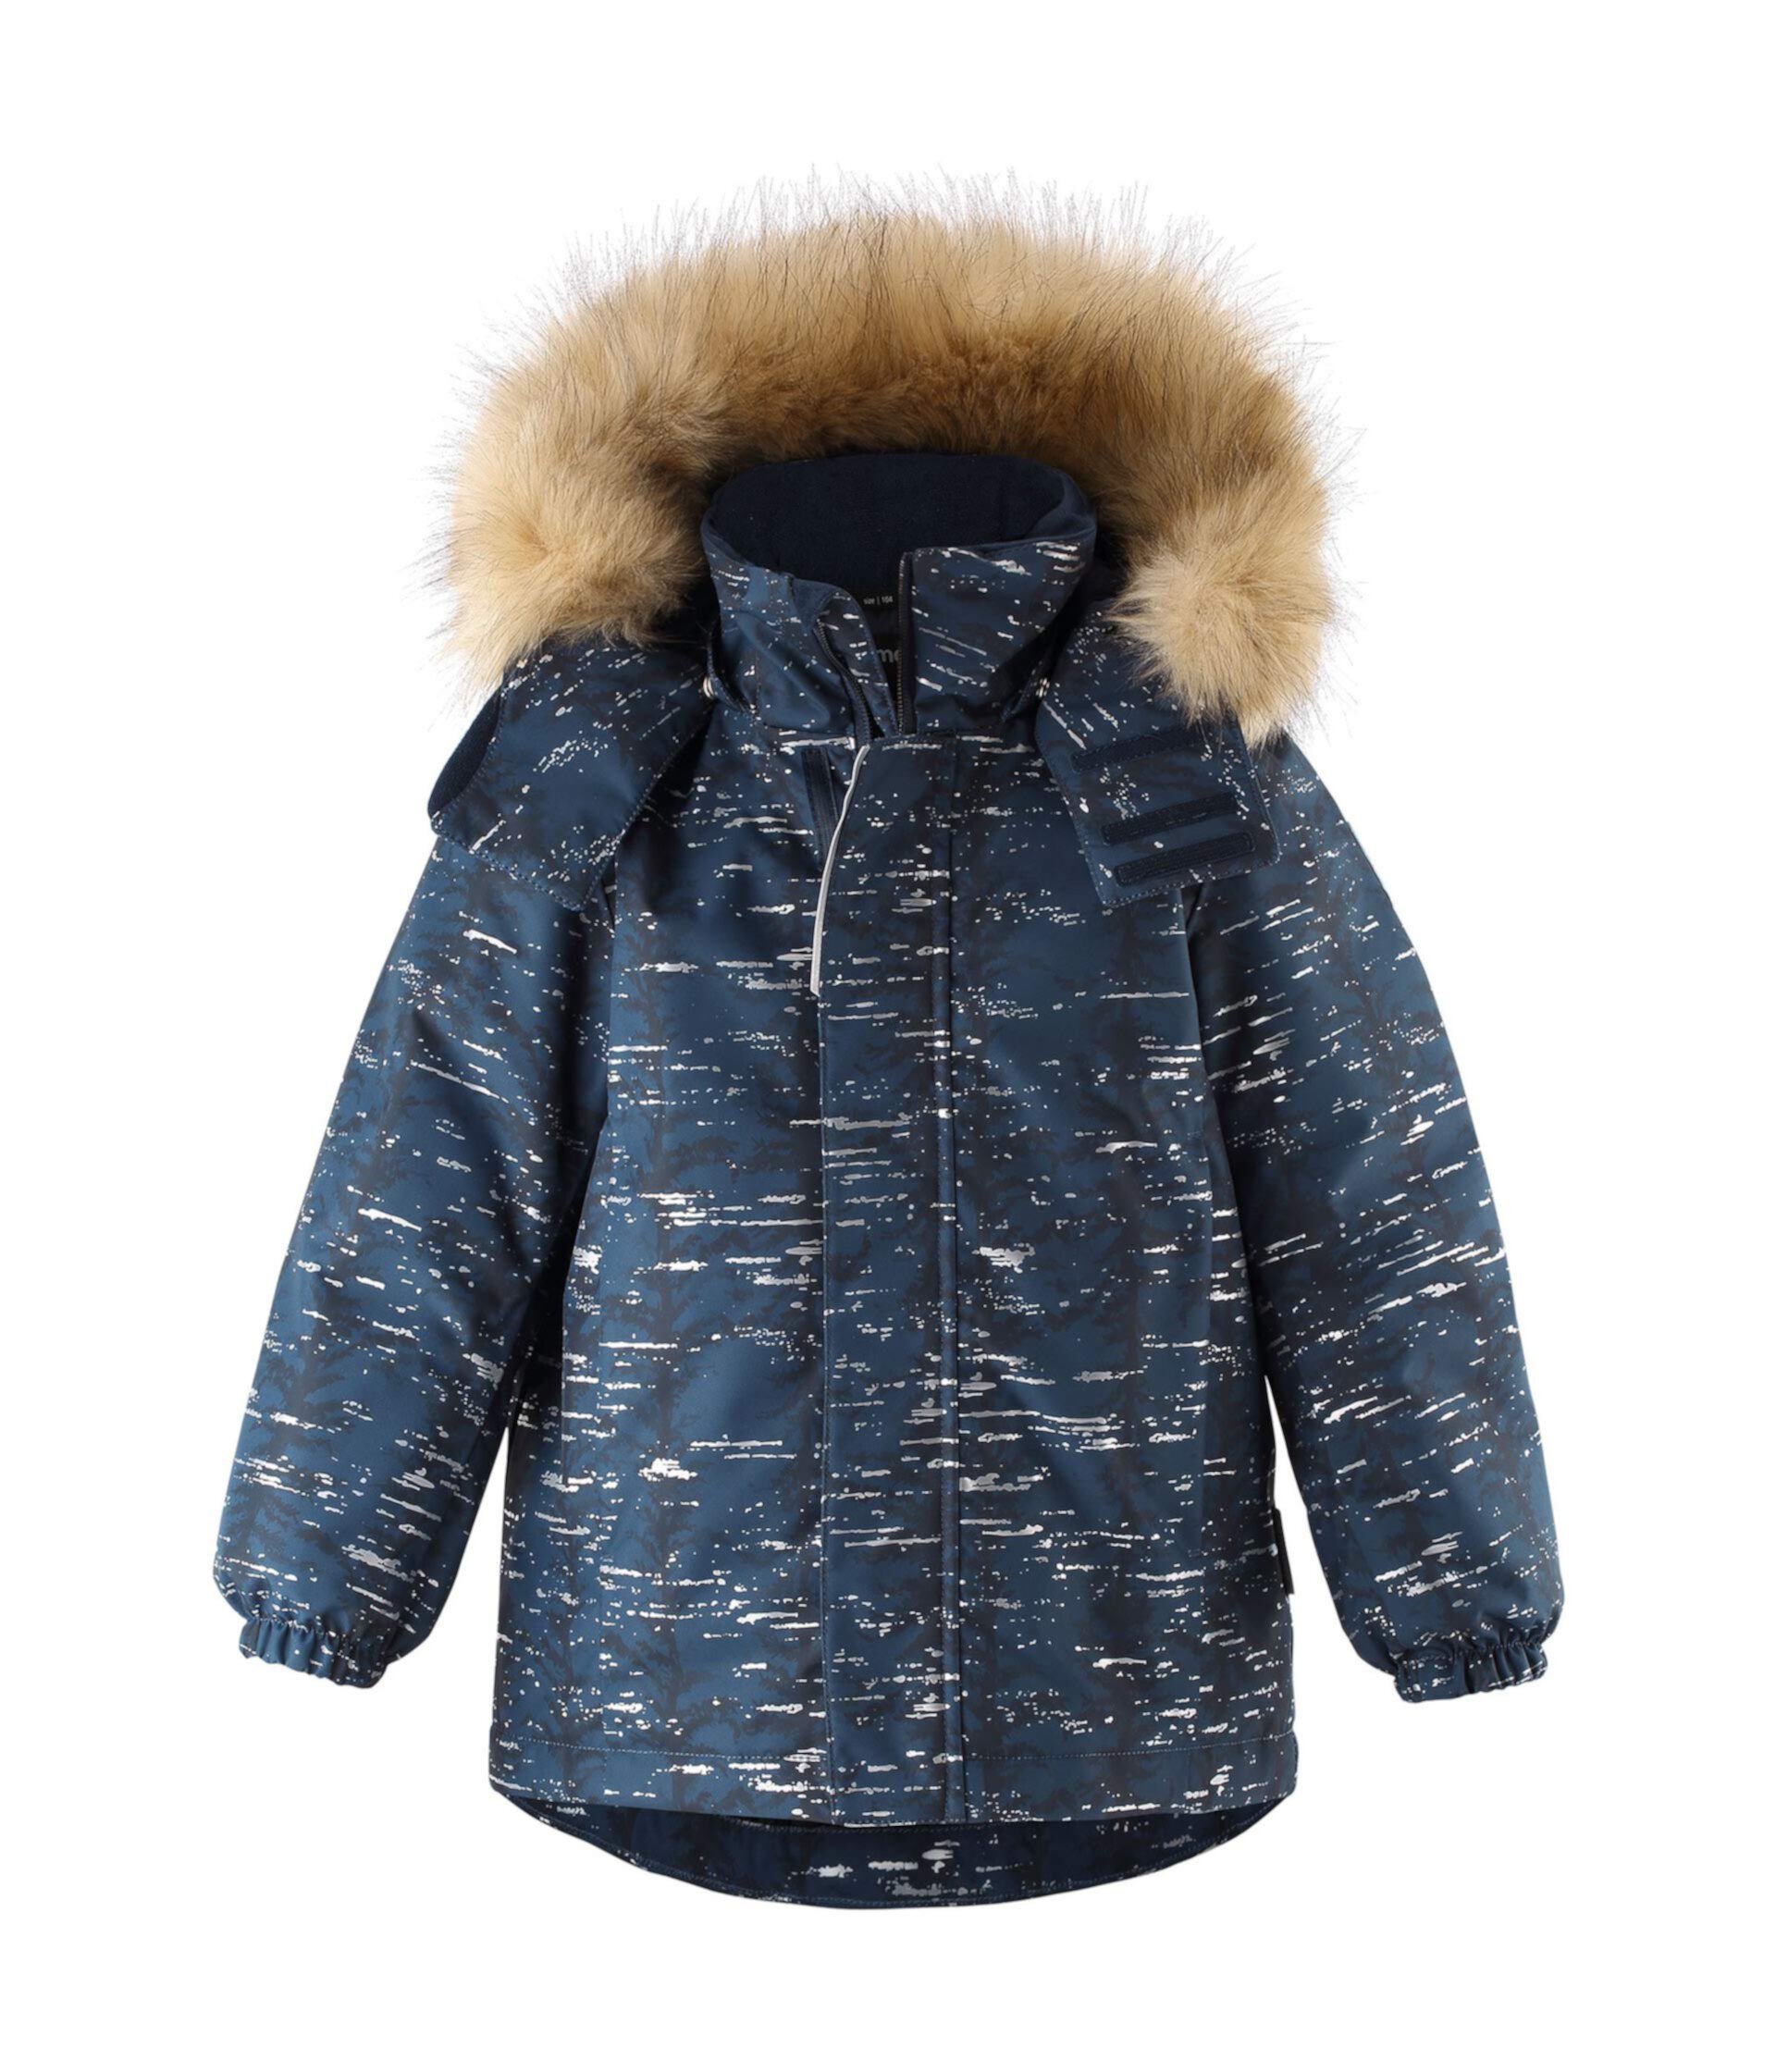 Зимняя куртка Reimatec Sprig (для малышей / маленьких детей / детей старшего возраста) Reima